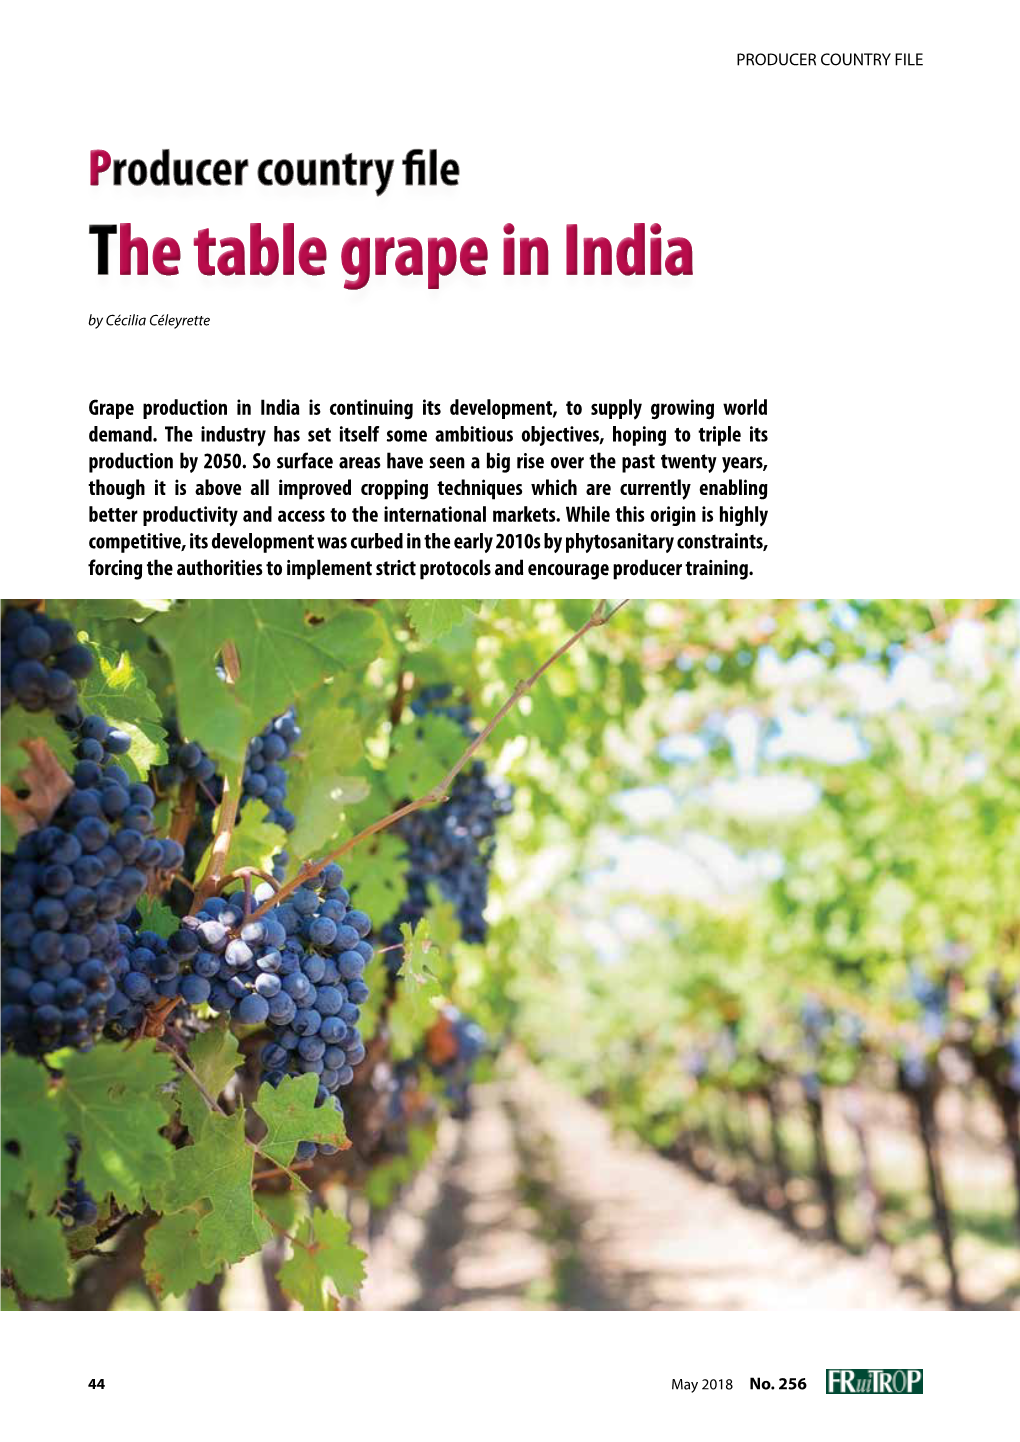 Table Grape in India by Cécilia Céleyrette